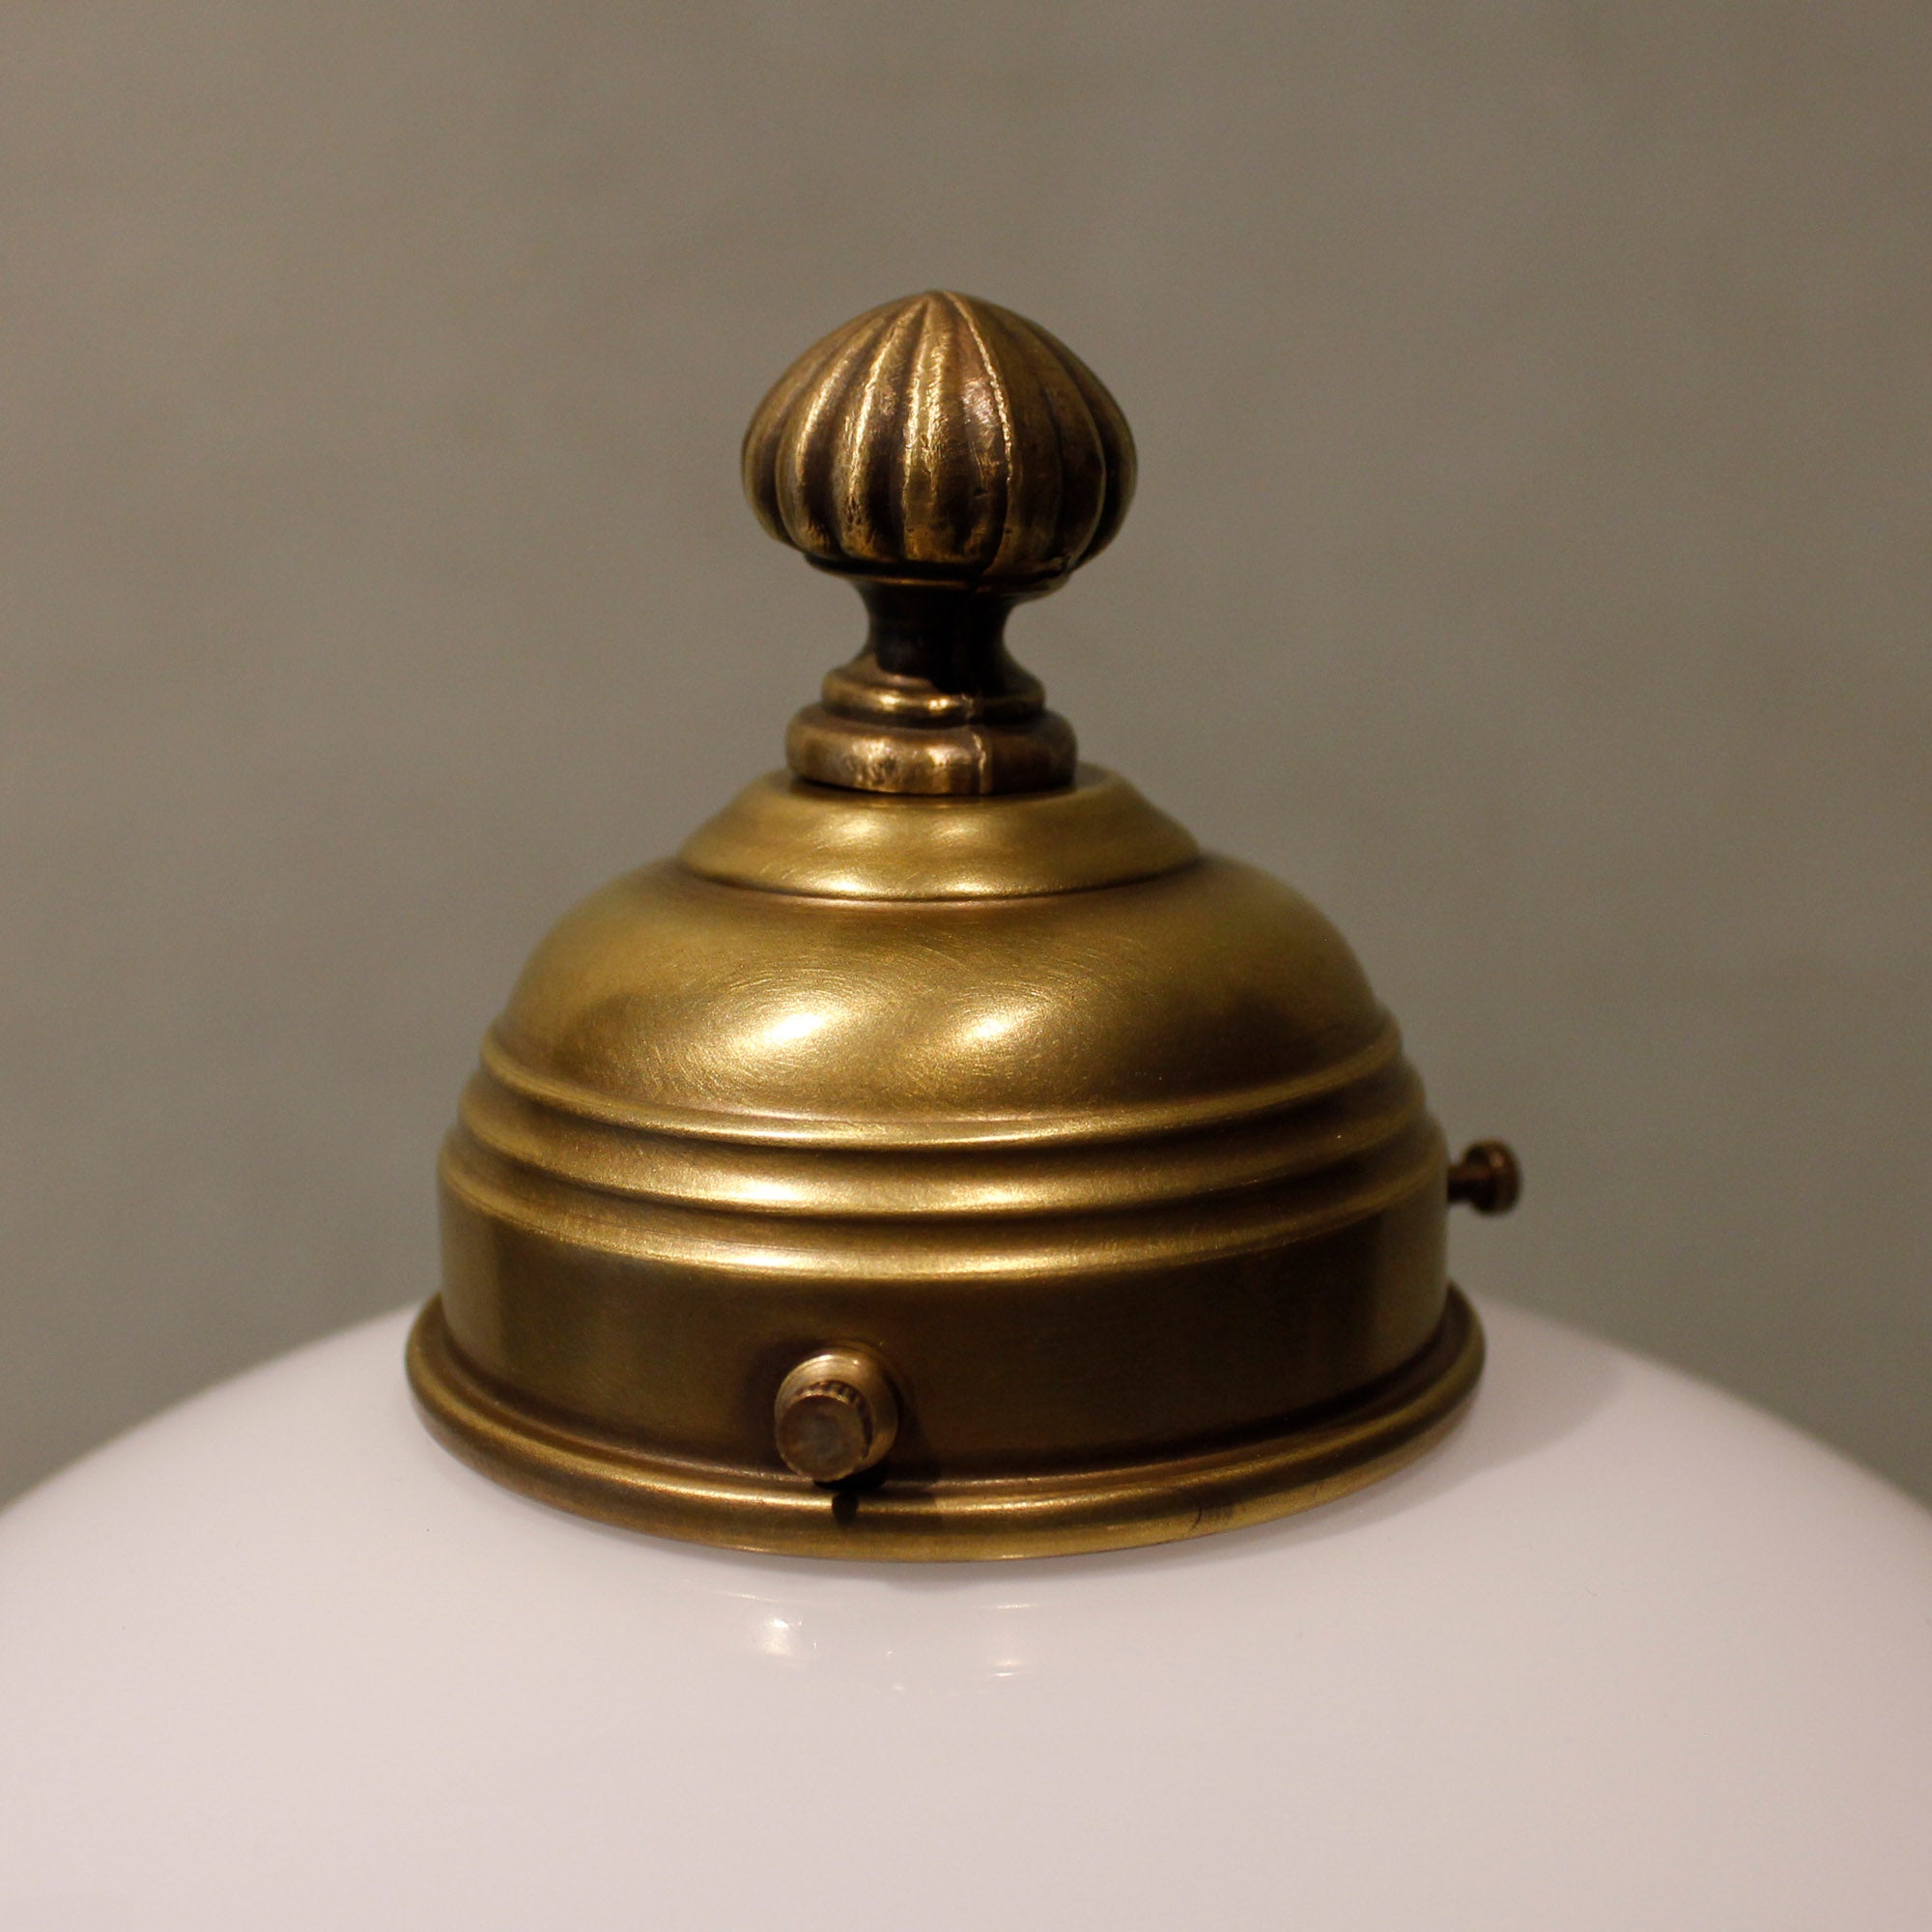 Art Nouveau Table Lamp "Nuance"